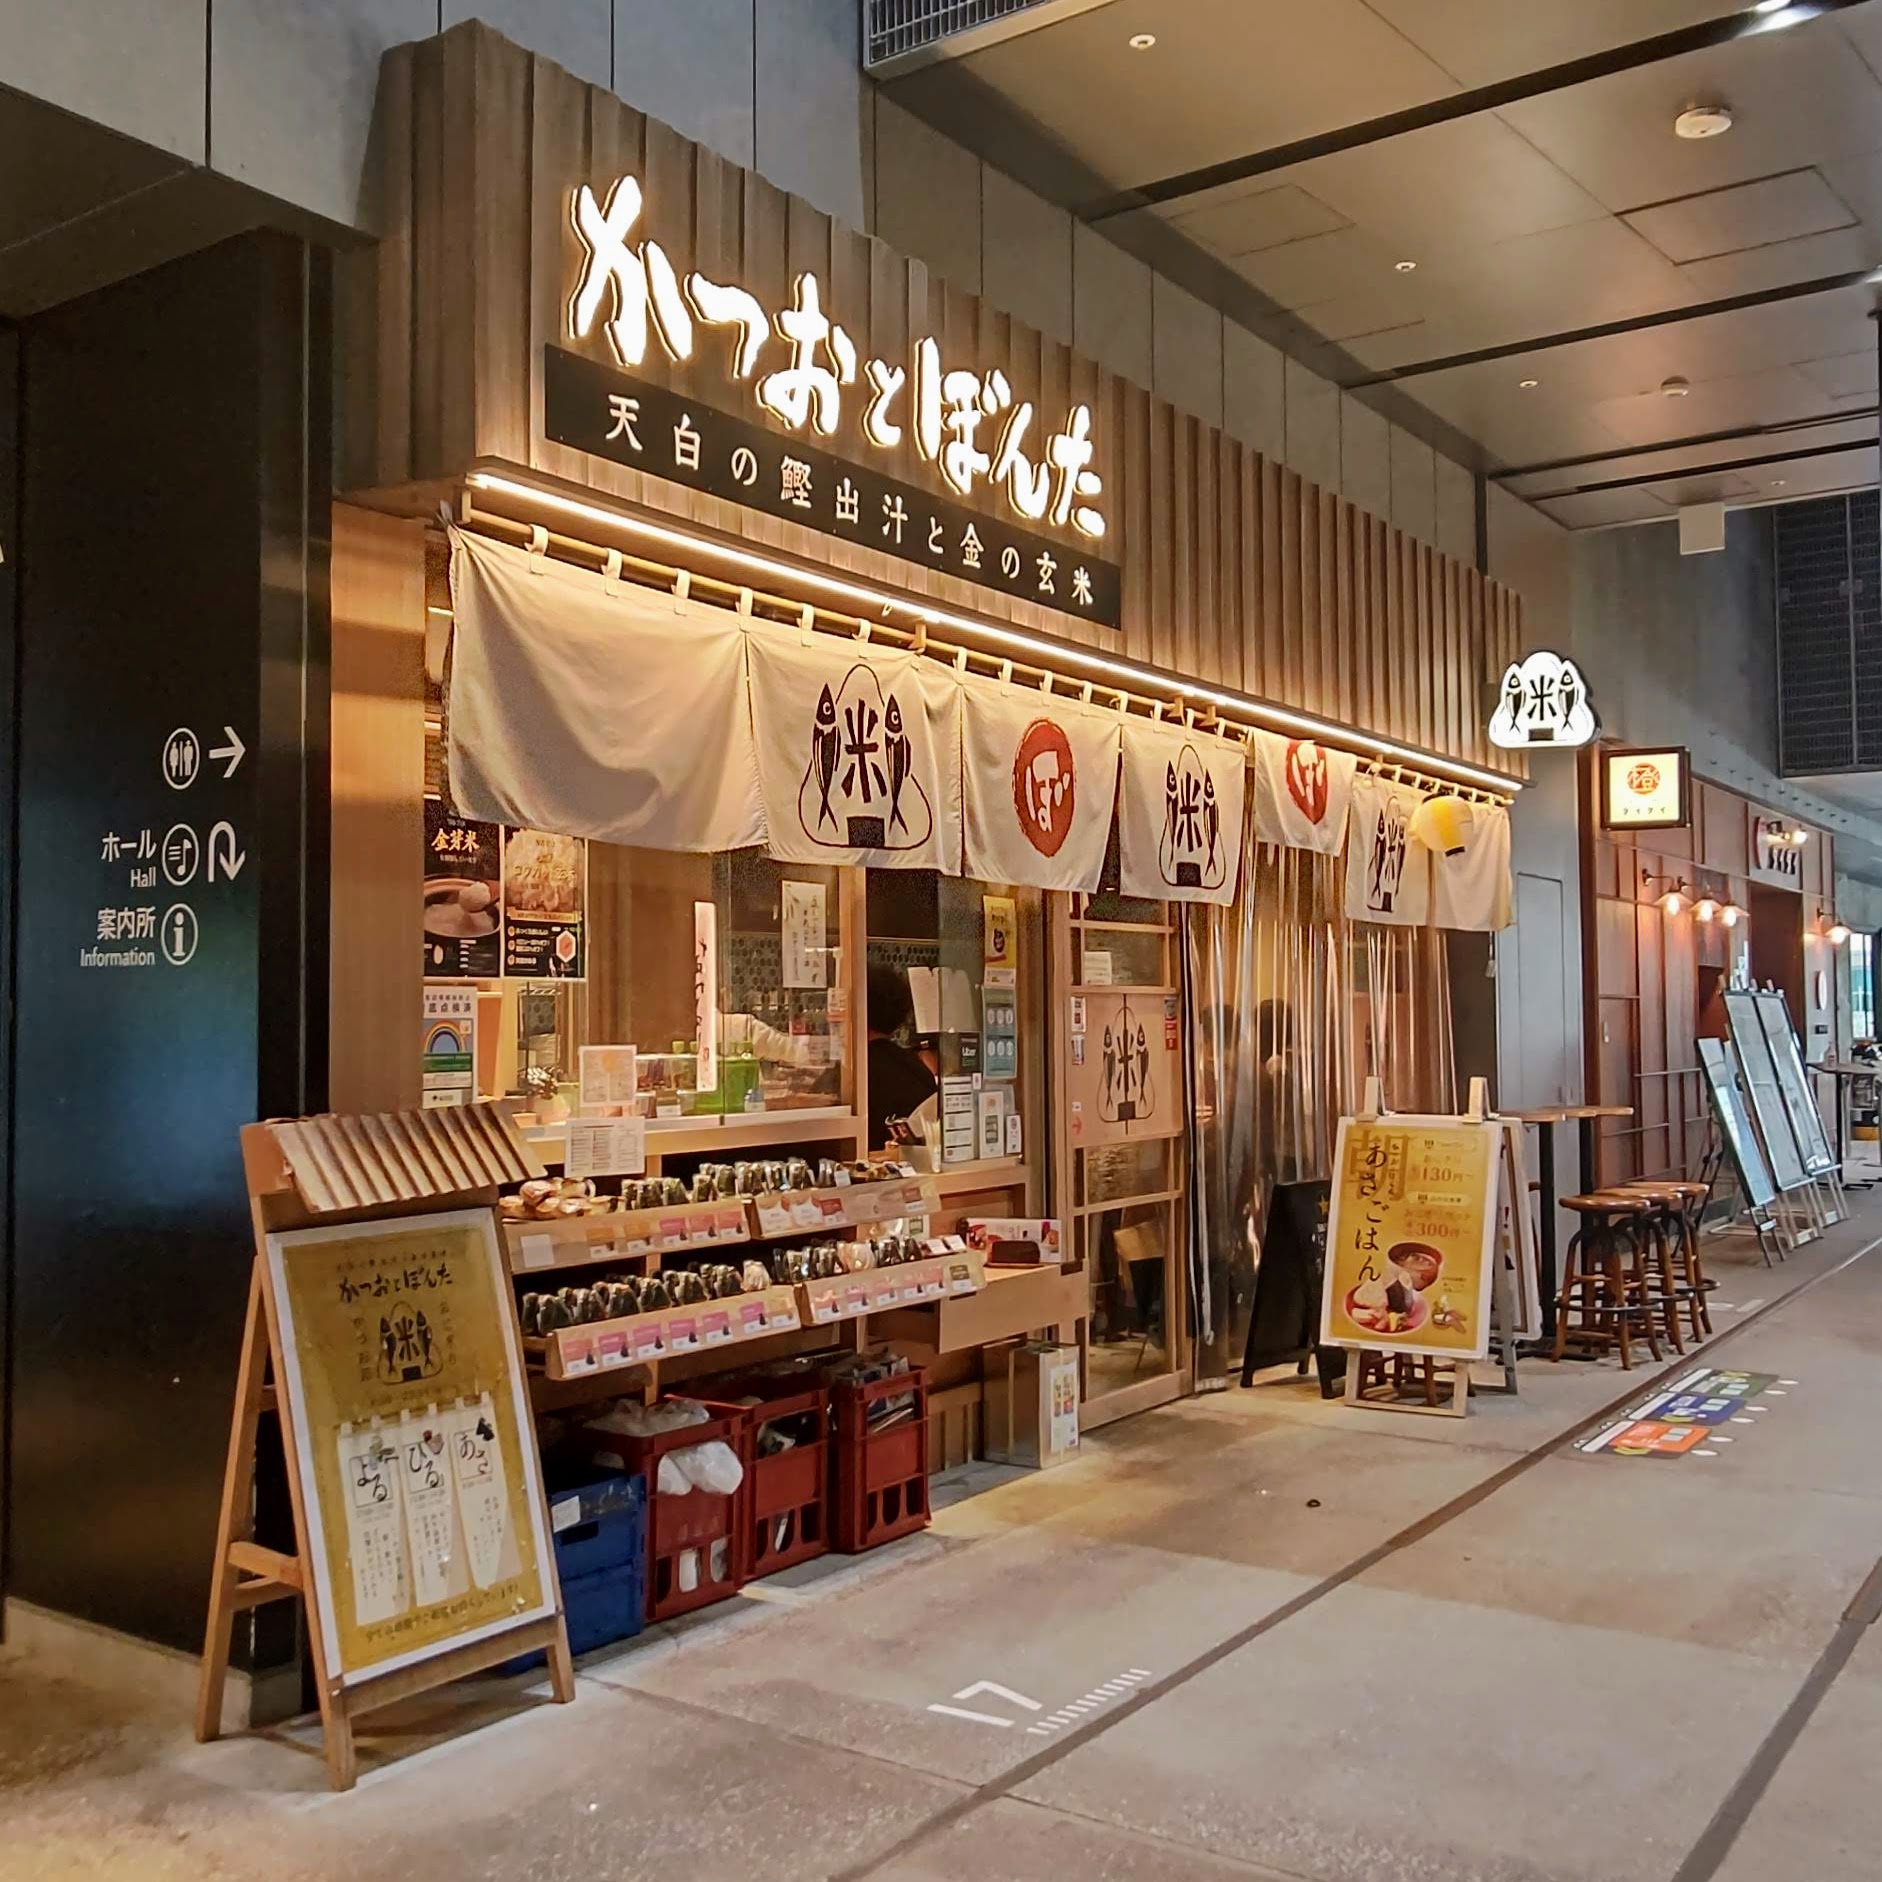 東京都渋谷区 かつおとぼんた 渋谷ストリーム店